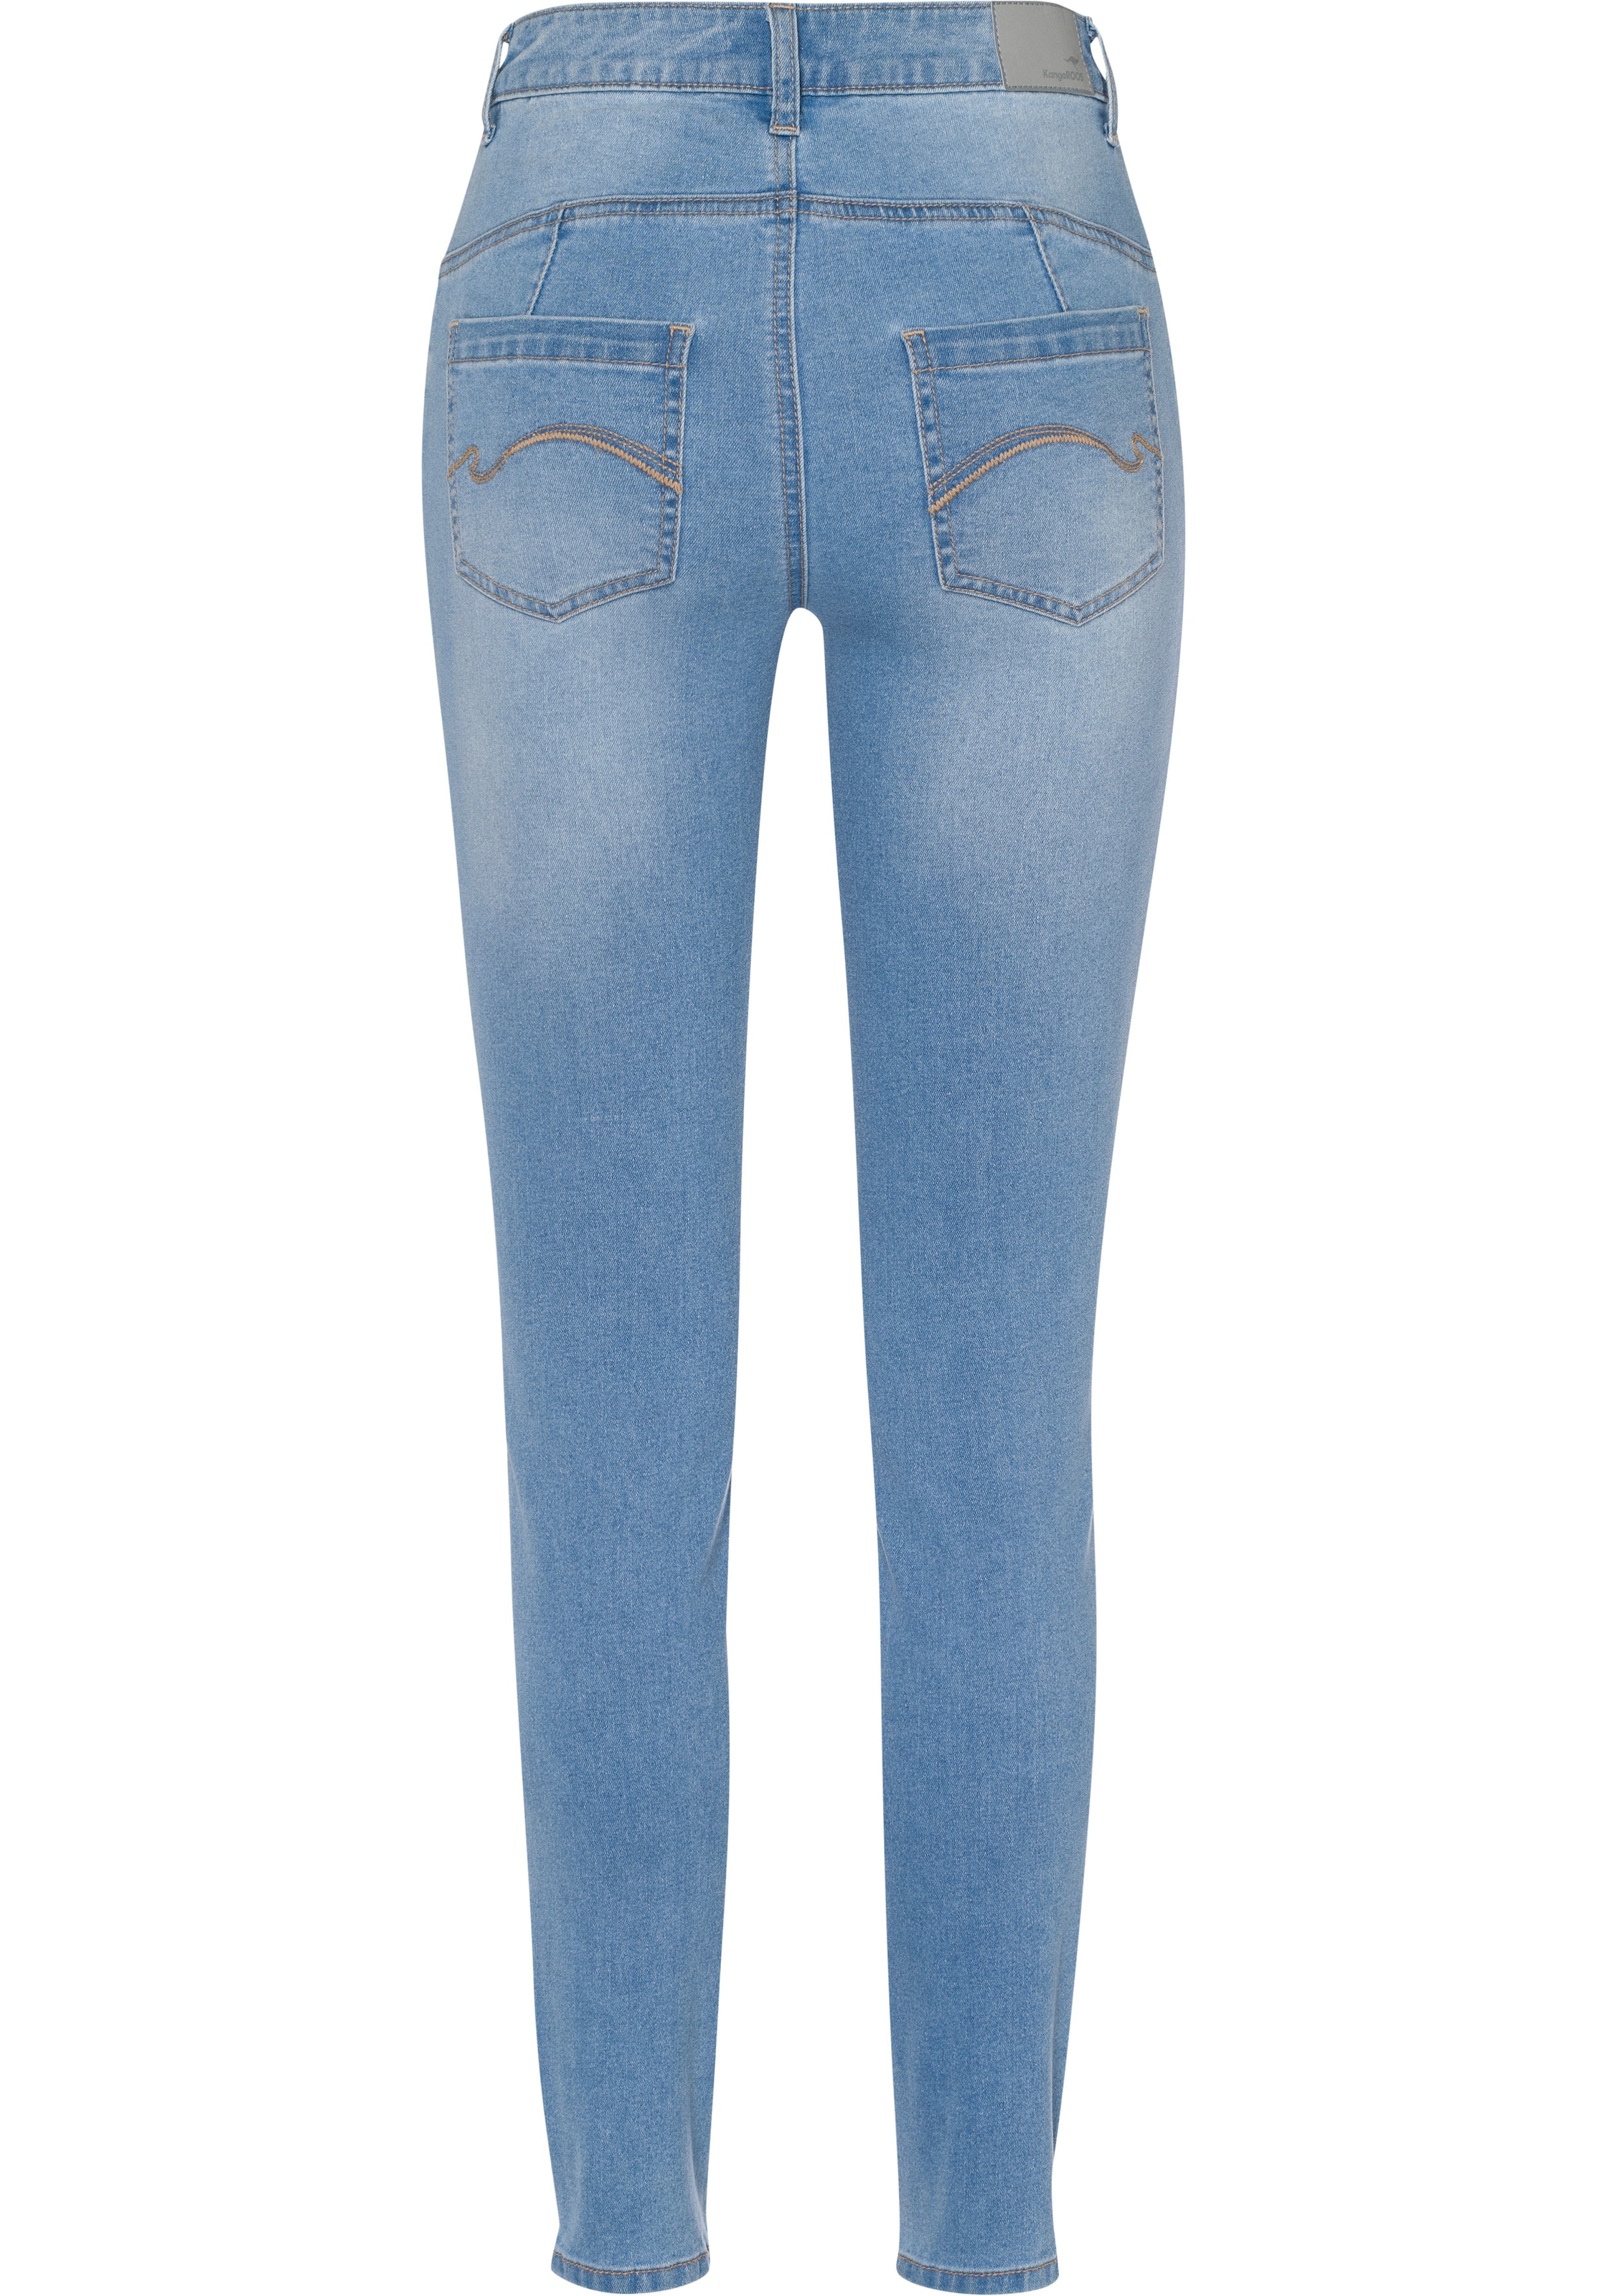 NEUE FIT«, »CROPPED HIGH SLIM Slim-fit-Jeans KangaROOS KOLLEKTION bestellen WAIST